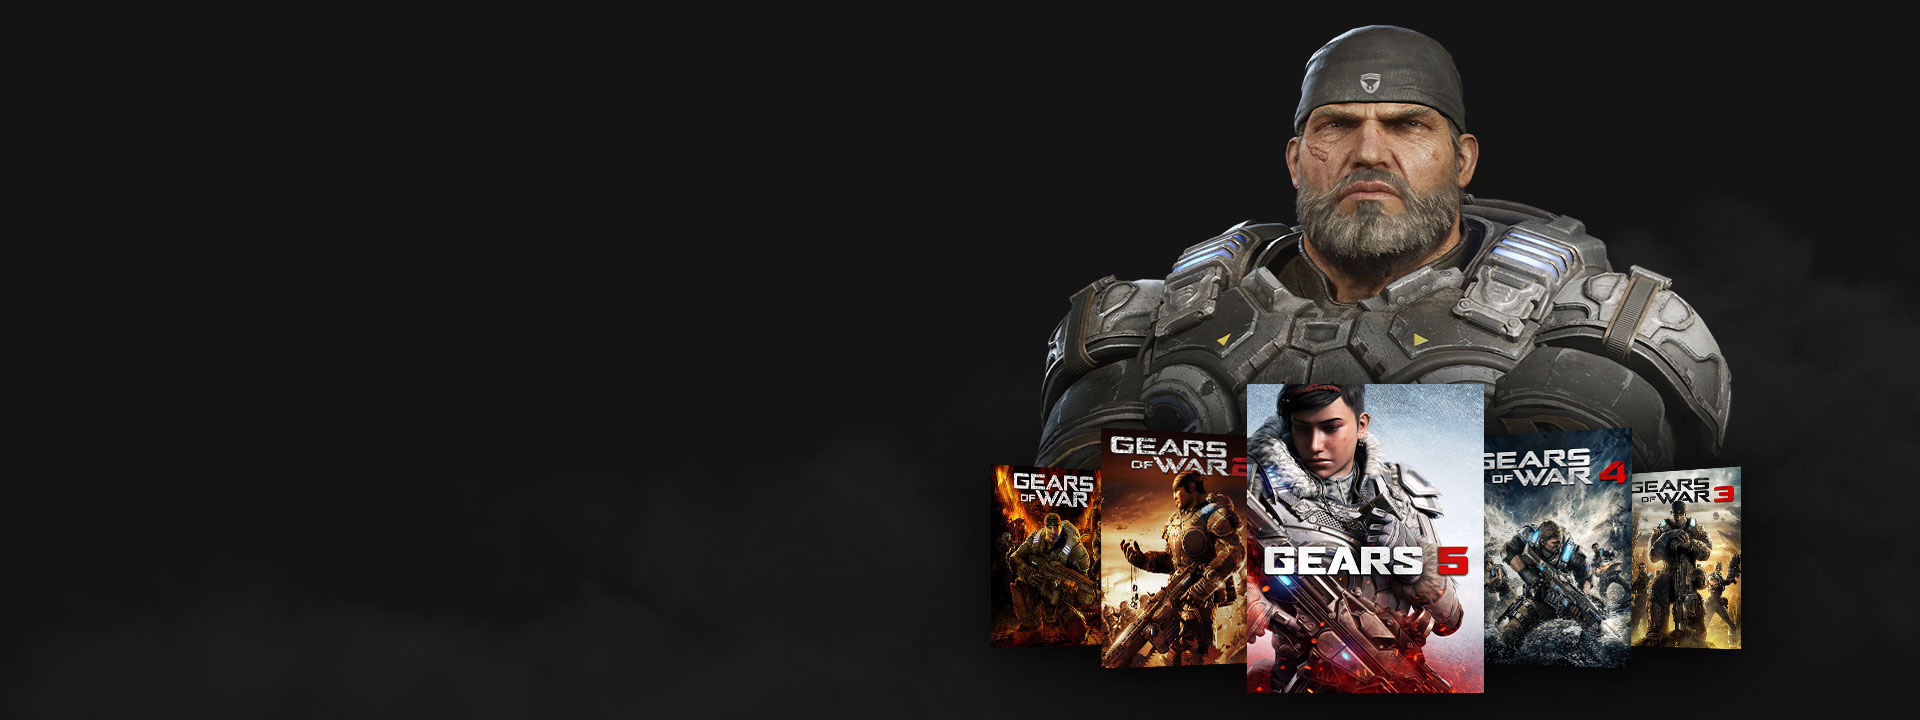 Xbox Game Pass-Logo, Marcus posiert mit den Gears of War-Spielen.